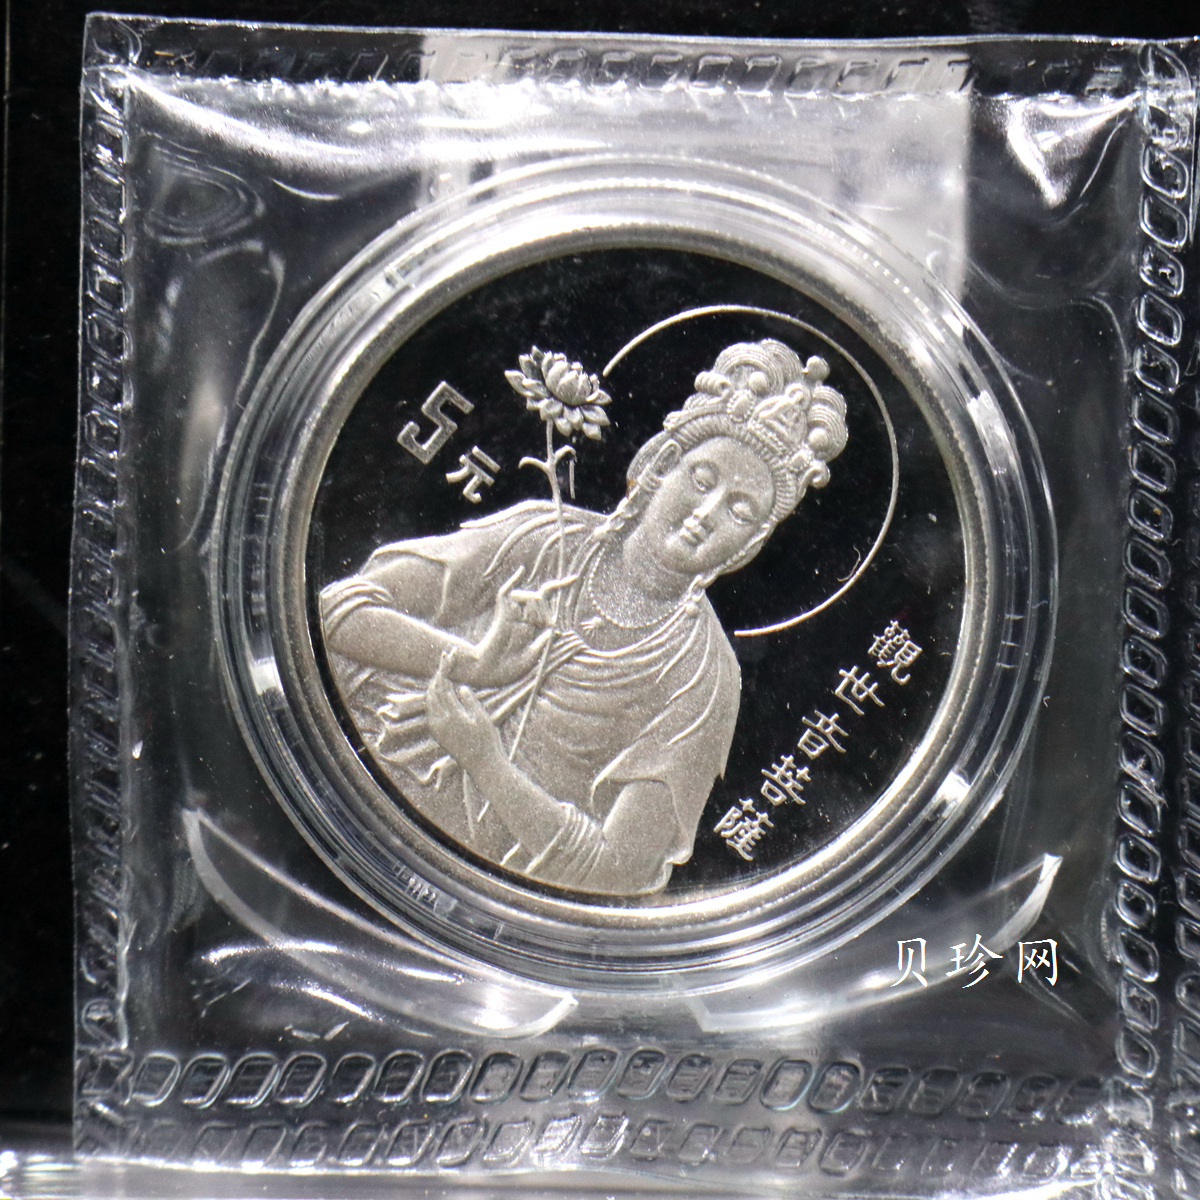 【950910】1995年观音-莲花观音1/2盎司精制银币